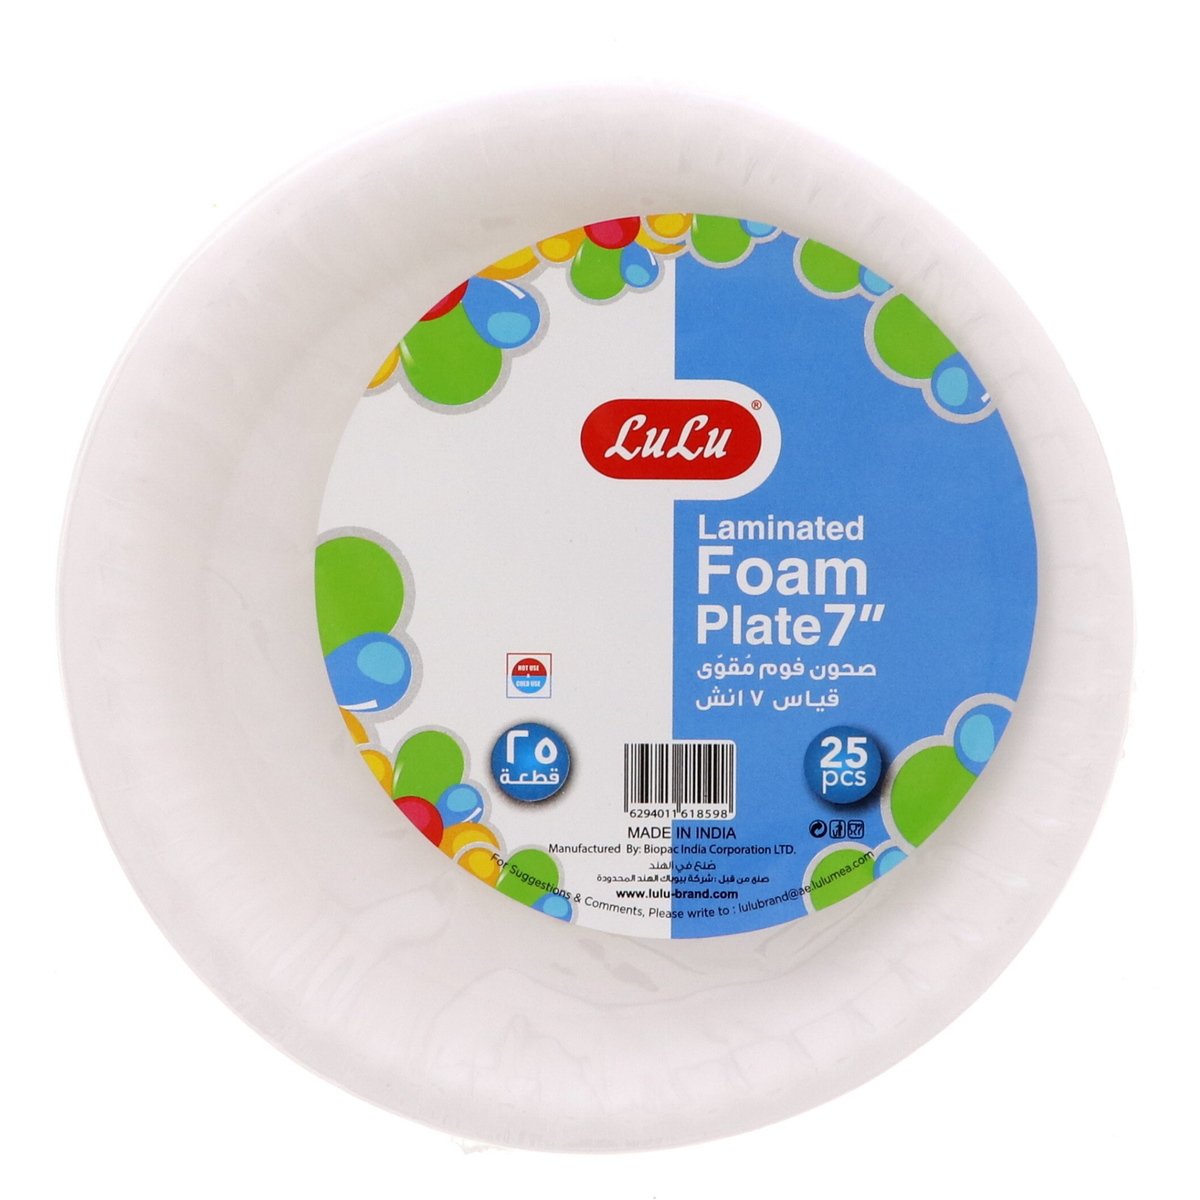 LuLu Laminated Foam Plate 7inch 25pcs